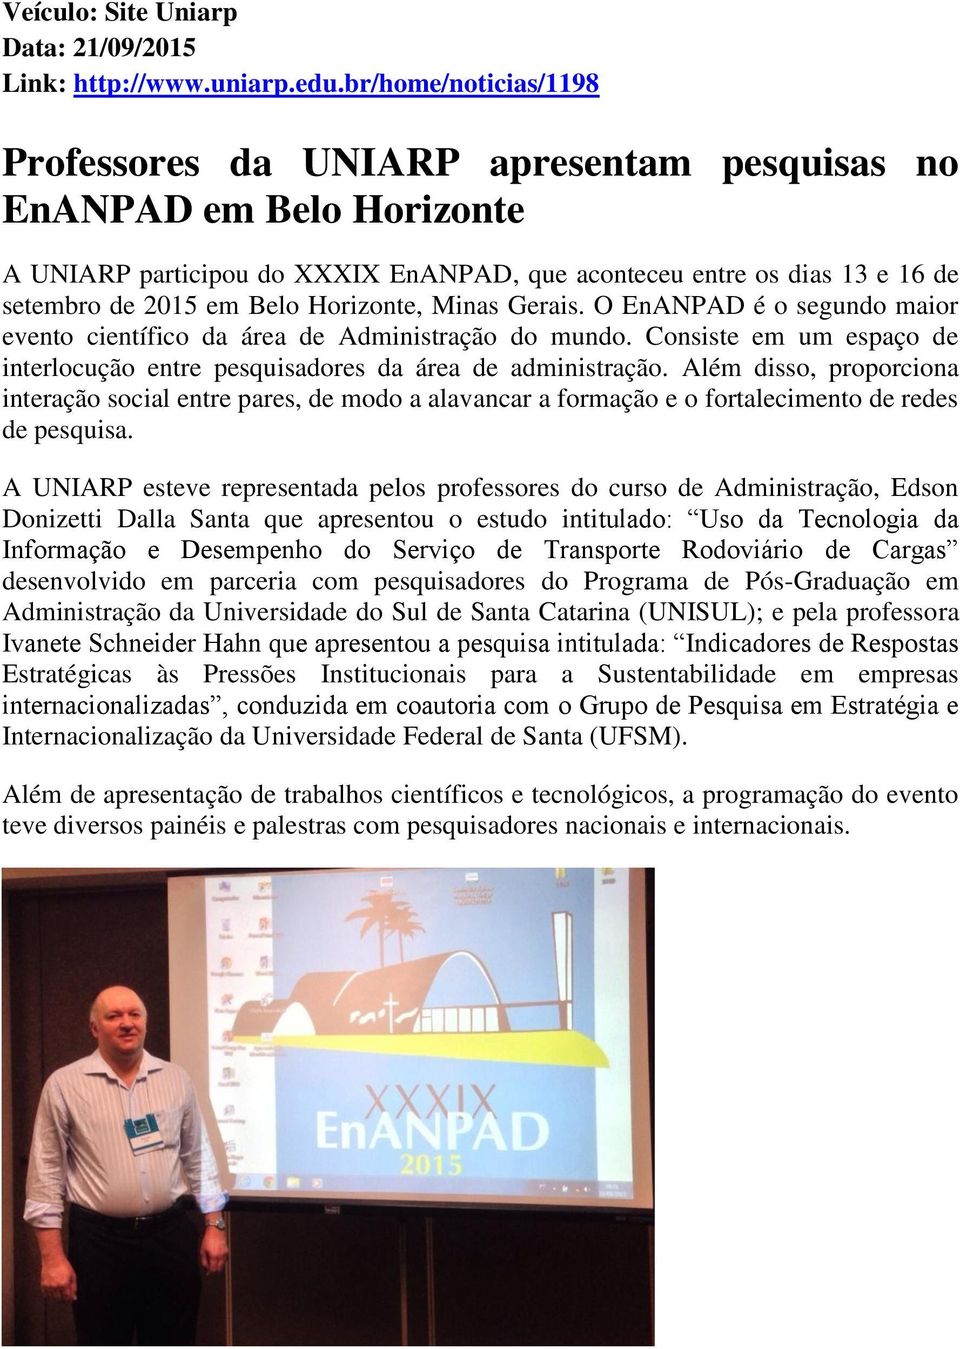 Horizonte, Minas Gerais. O EnANPAD é o segundo maior evento científico da área de Administração do mundo. Consiste em um espaço de interlocução entre pesquisadores da área de administração.